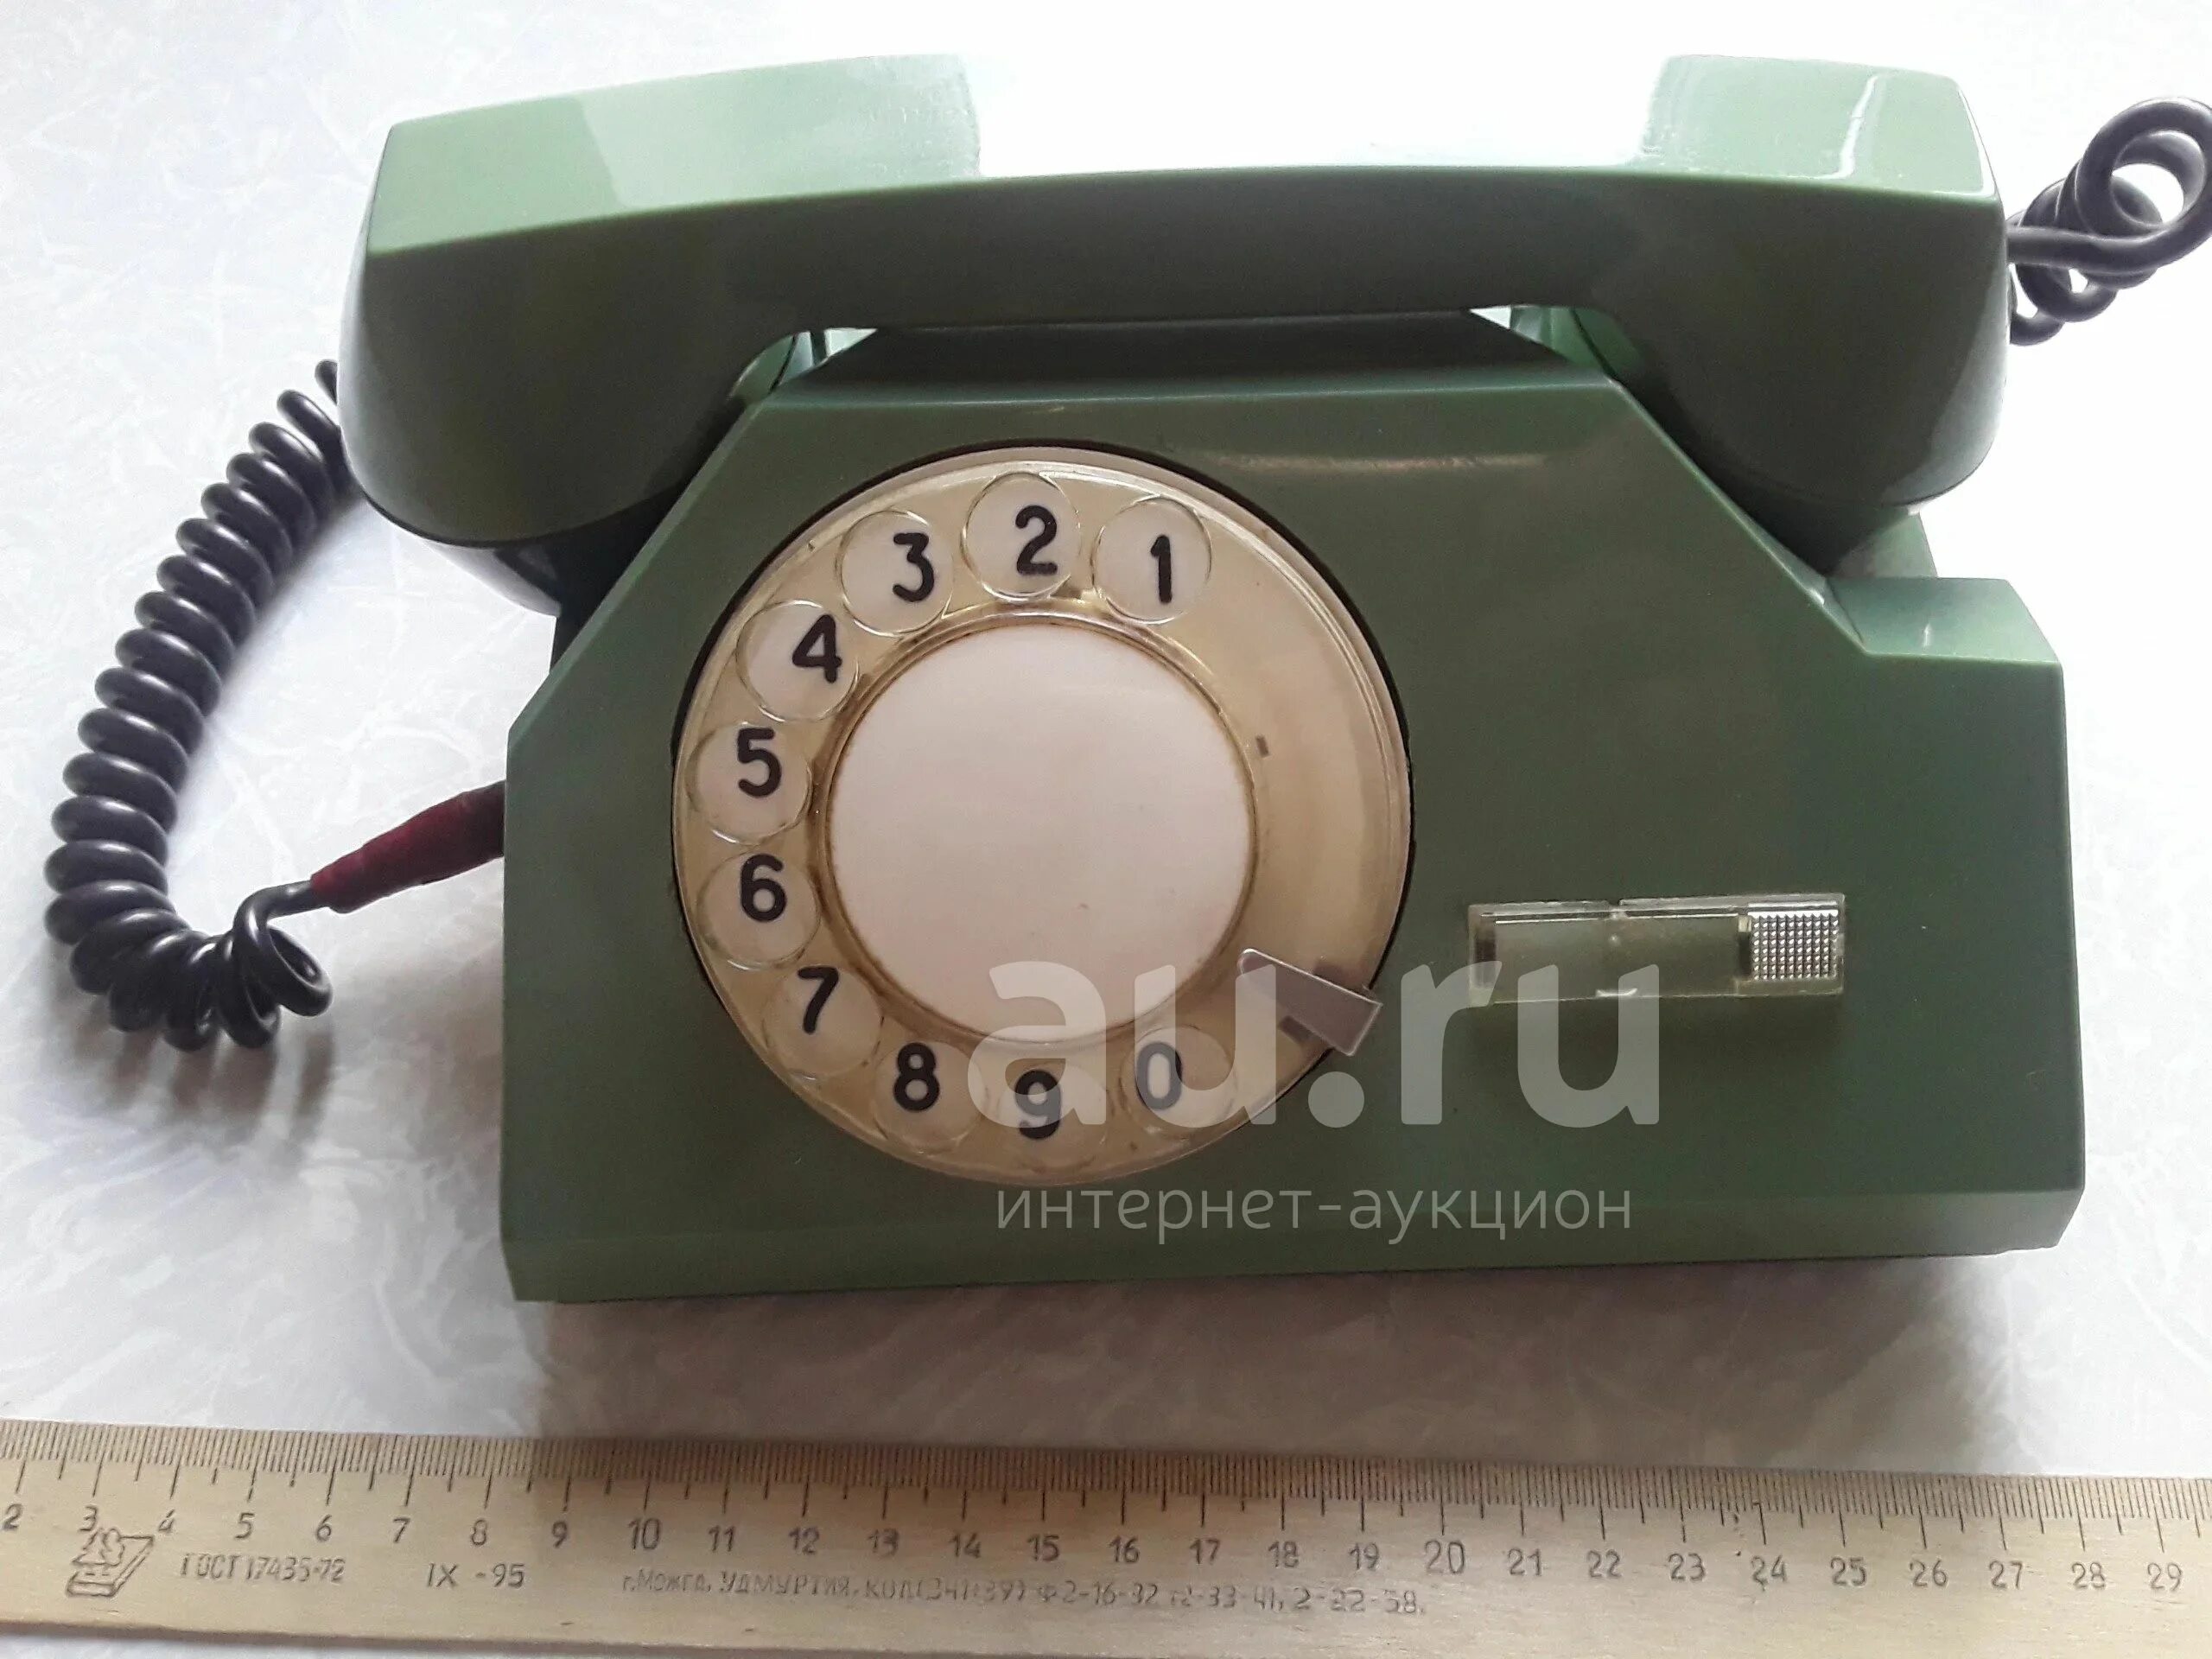 Та 72м телефонный аппарат. Стационарный телефонный аппарат 72м. Телефонный аппарат та-72. Проводной телефон СССР.